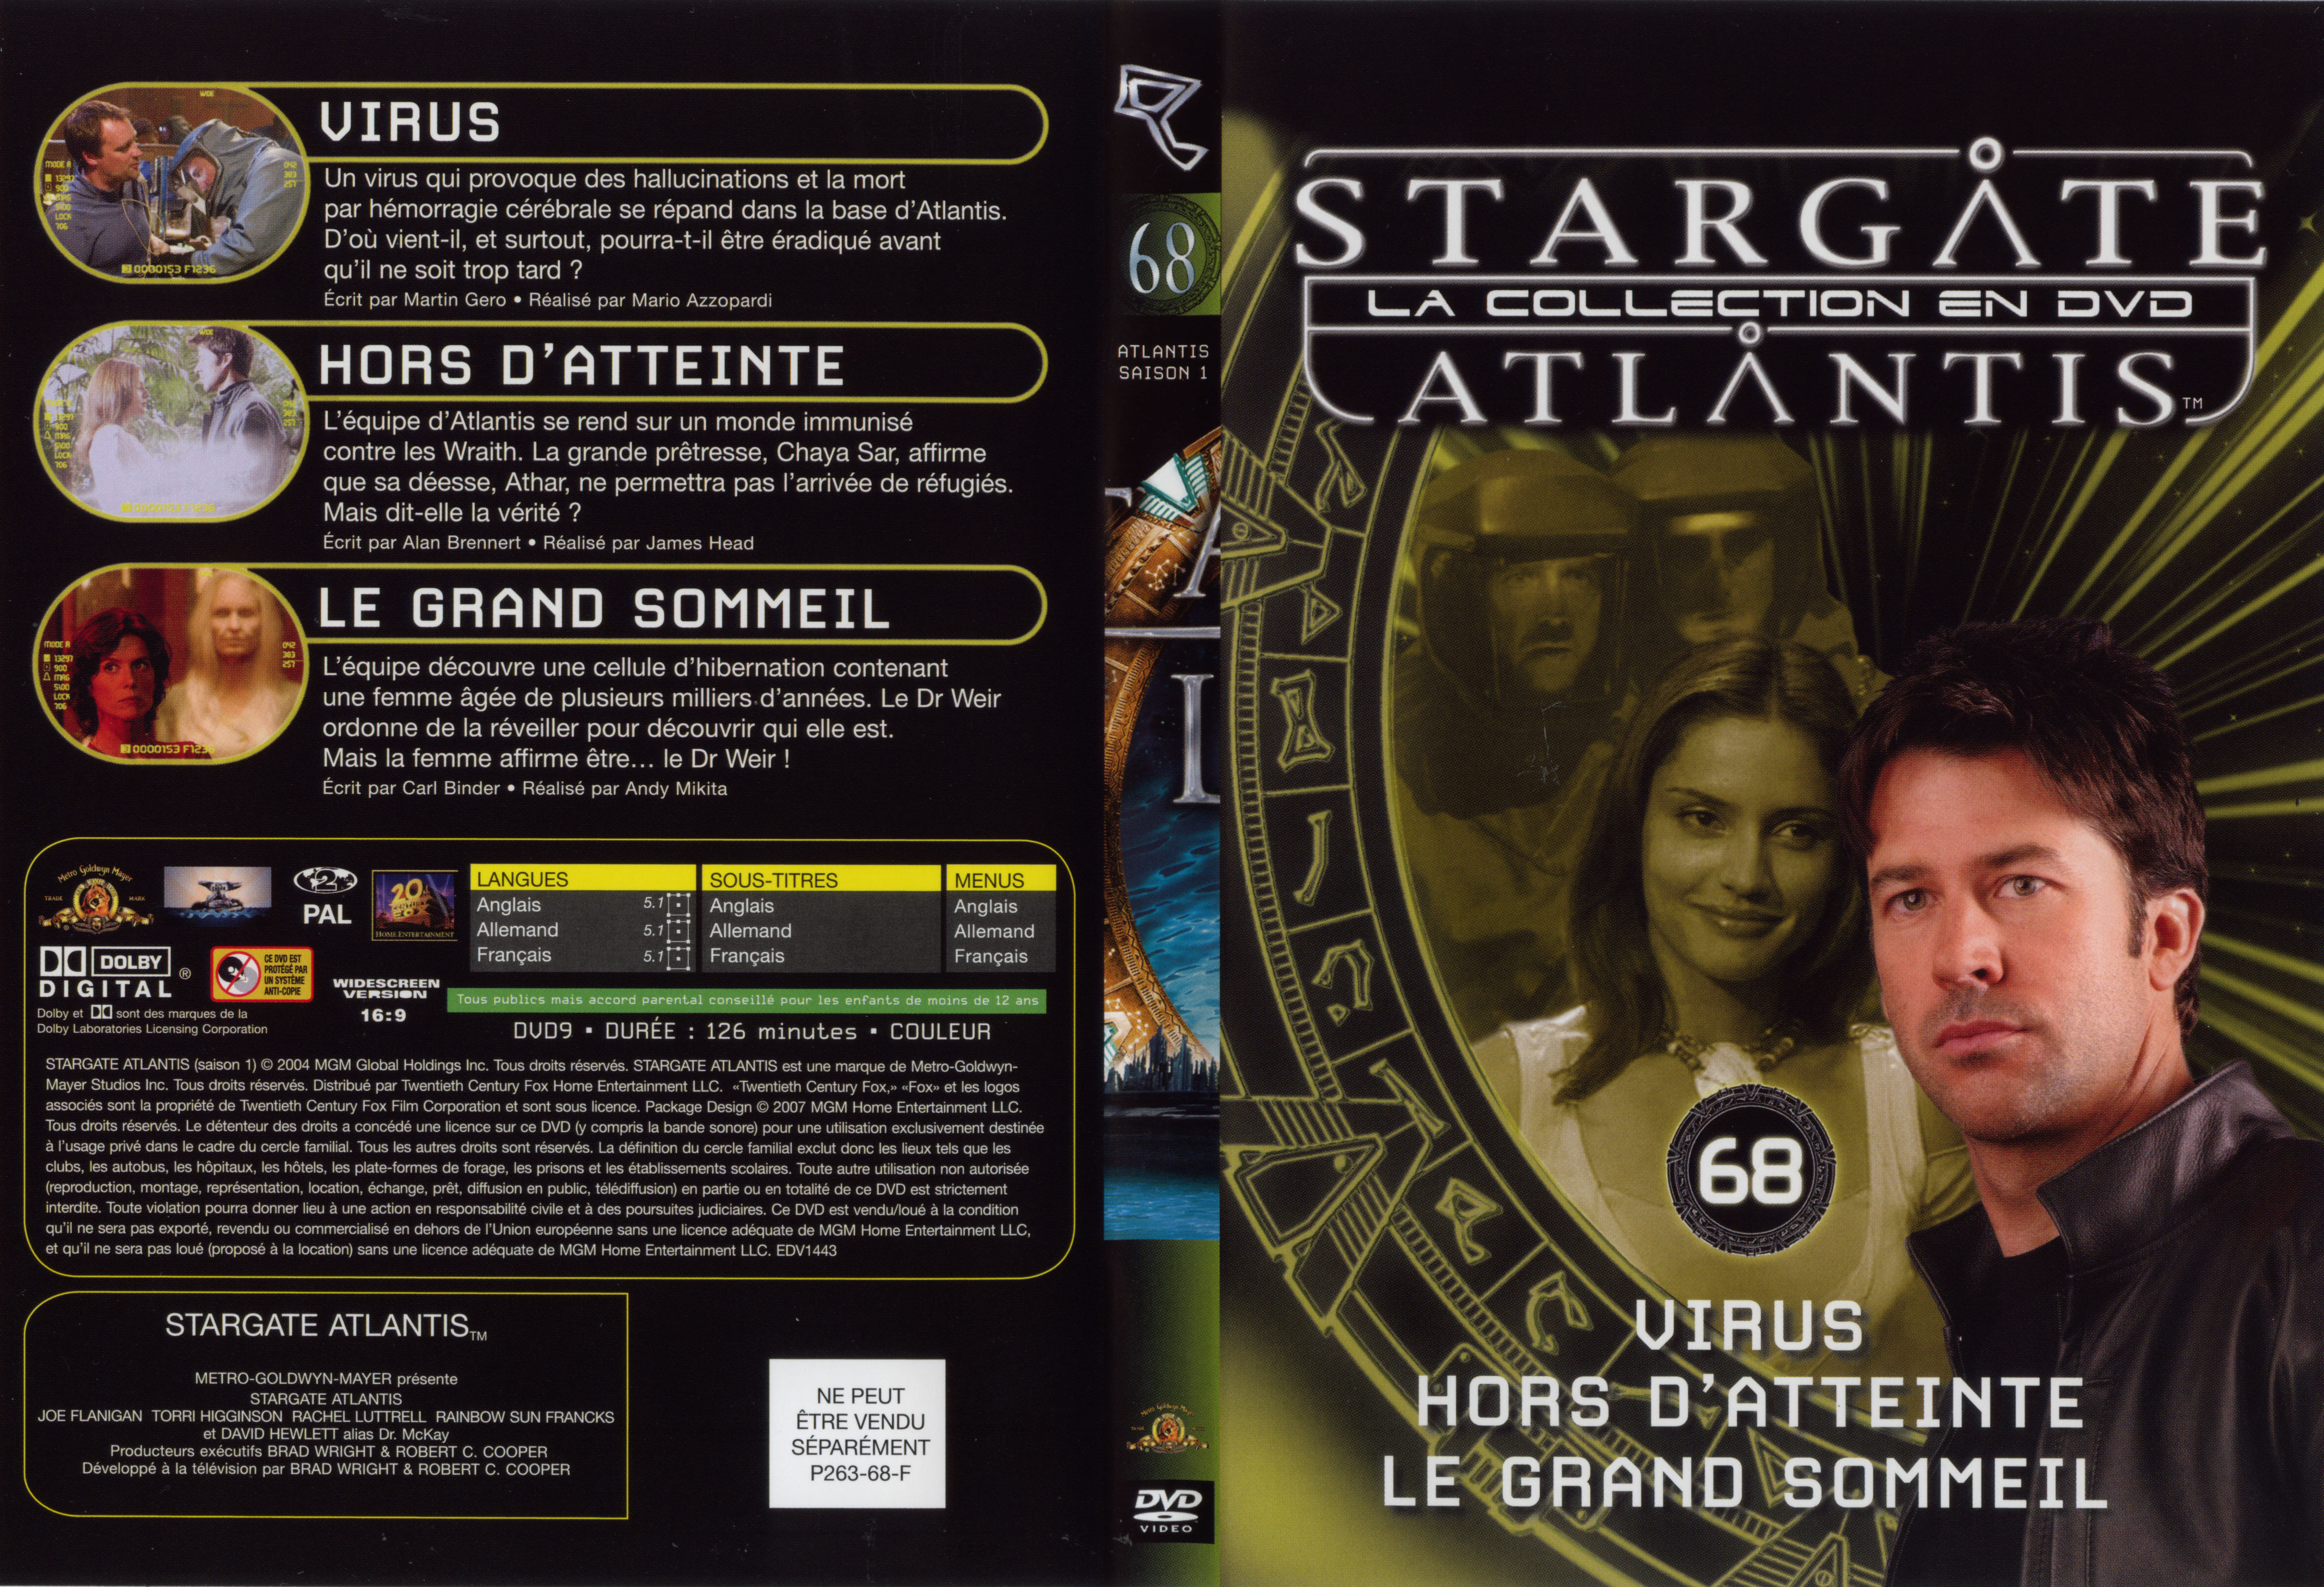 Jaquette DVD Stargate atlantis saison 1 vol 68